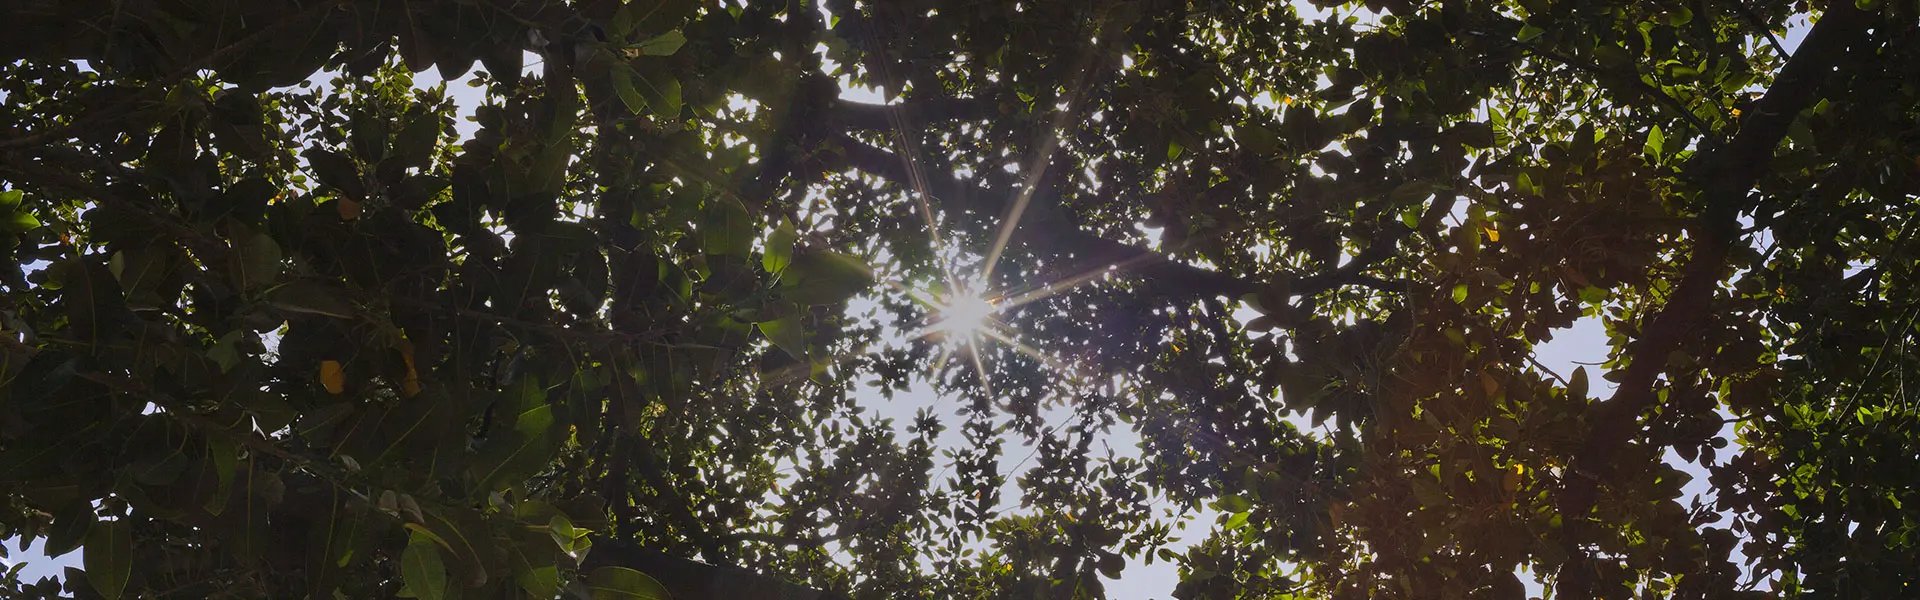 Sunlight under trees